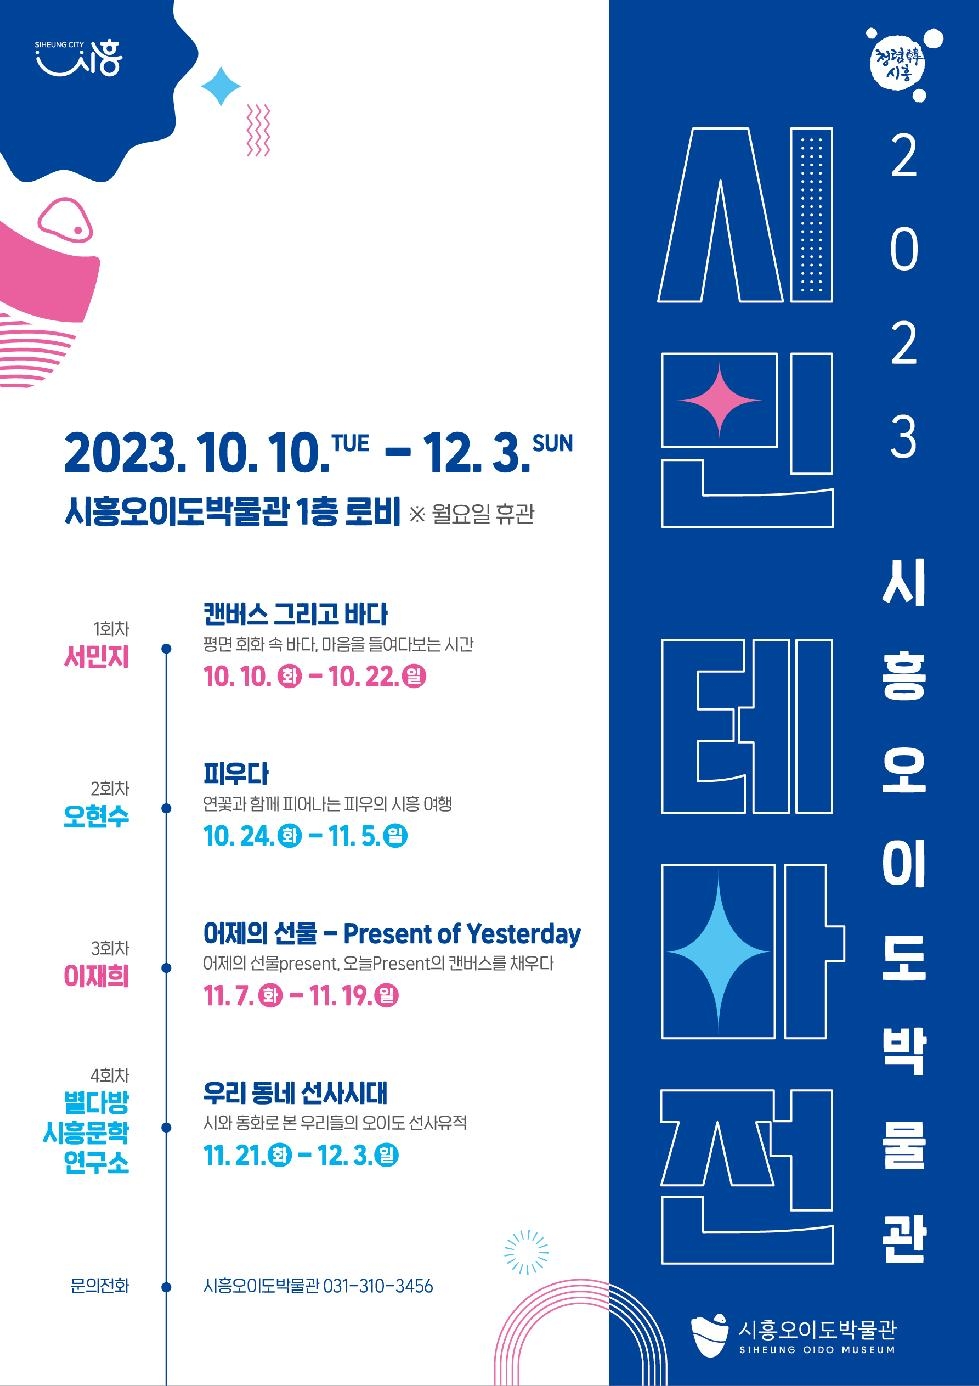 시흥오이도박물관, 12월 3일까지 ‘시민 테마전’ 연다